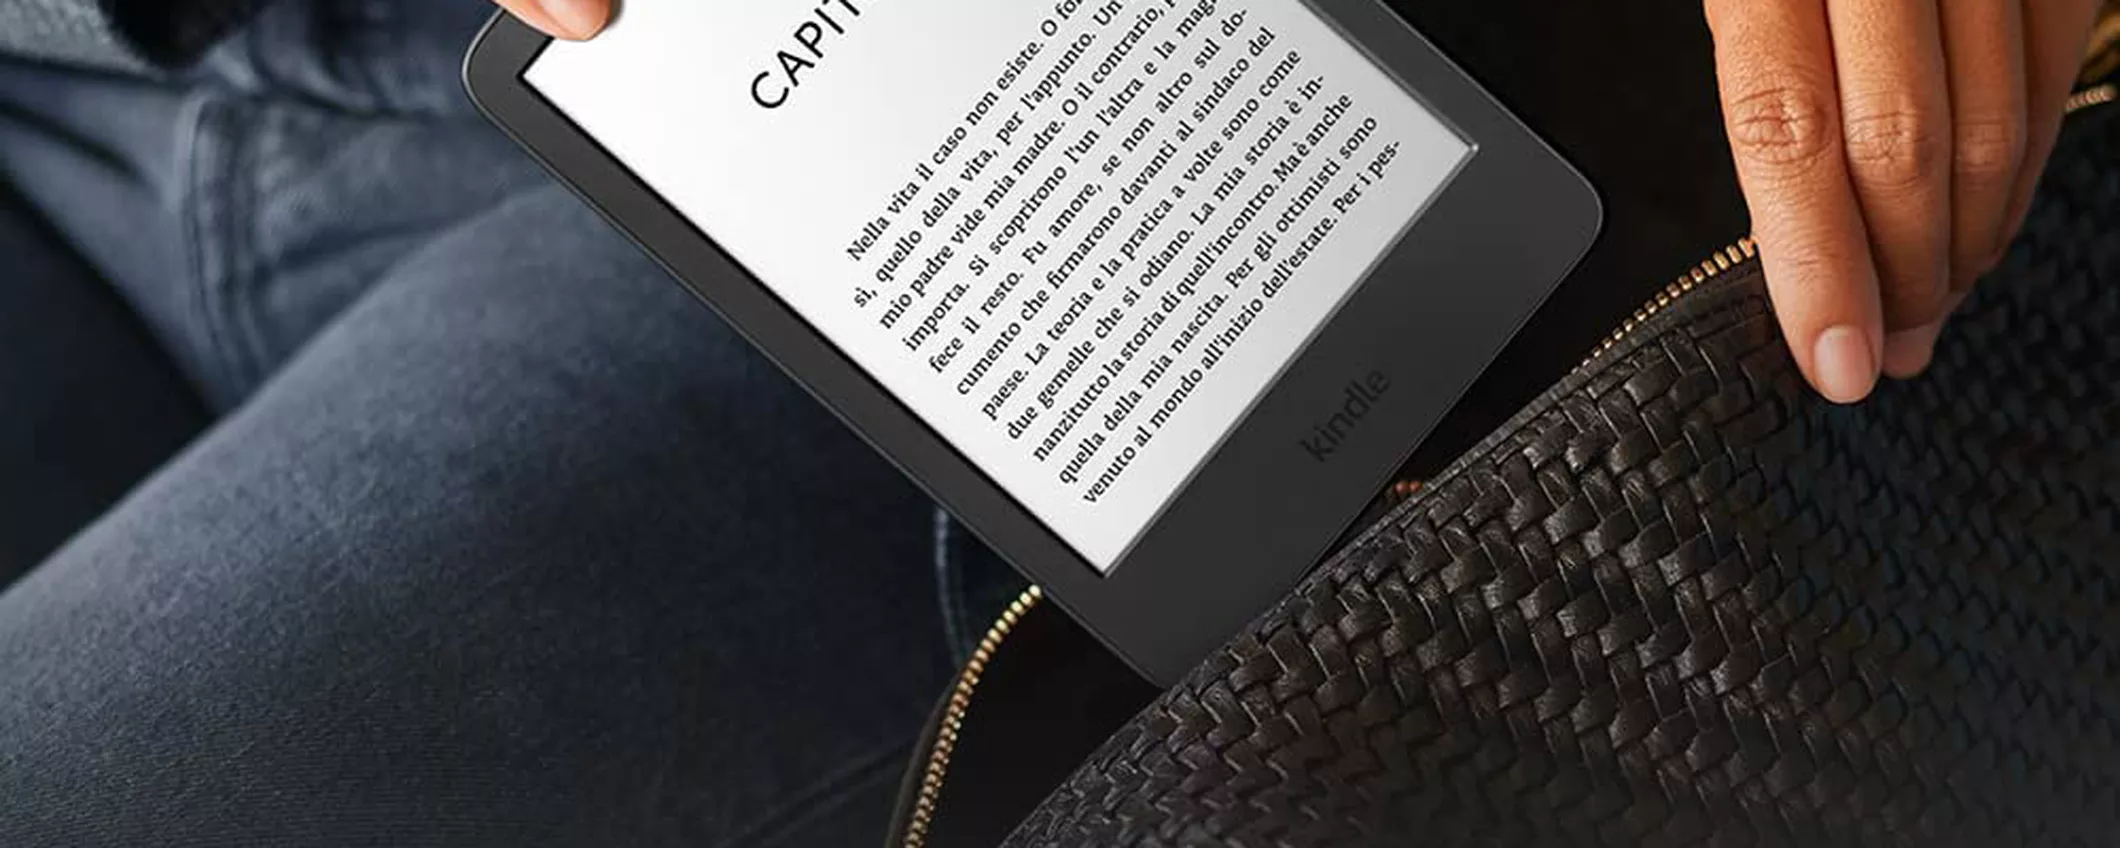 Il Kindle 2022 è acquistabile su Amazon con tantissime novità: si parte da 99,99€